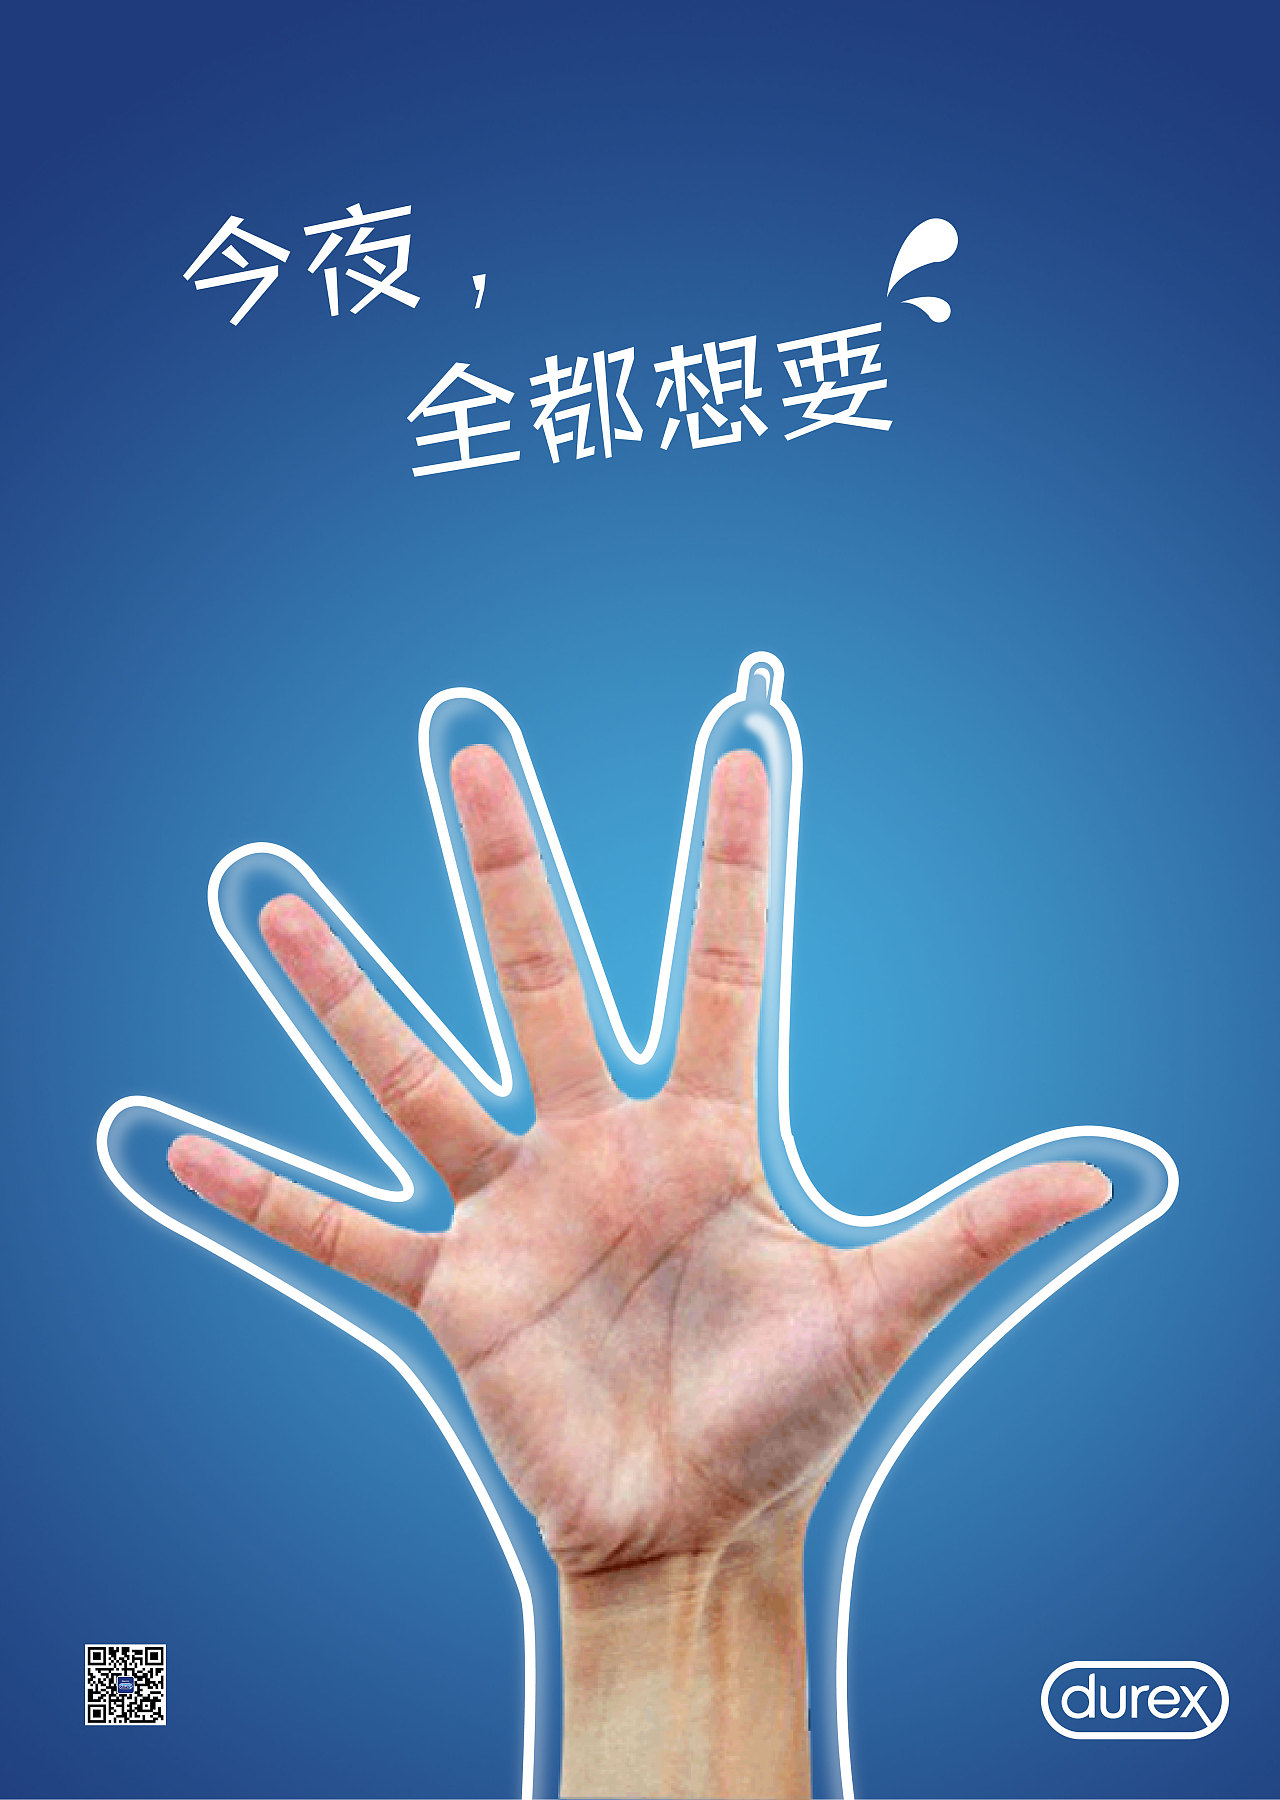 日本杜蕾斯创意广告图片